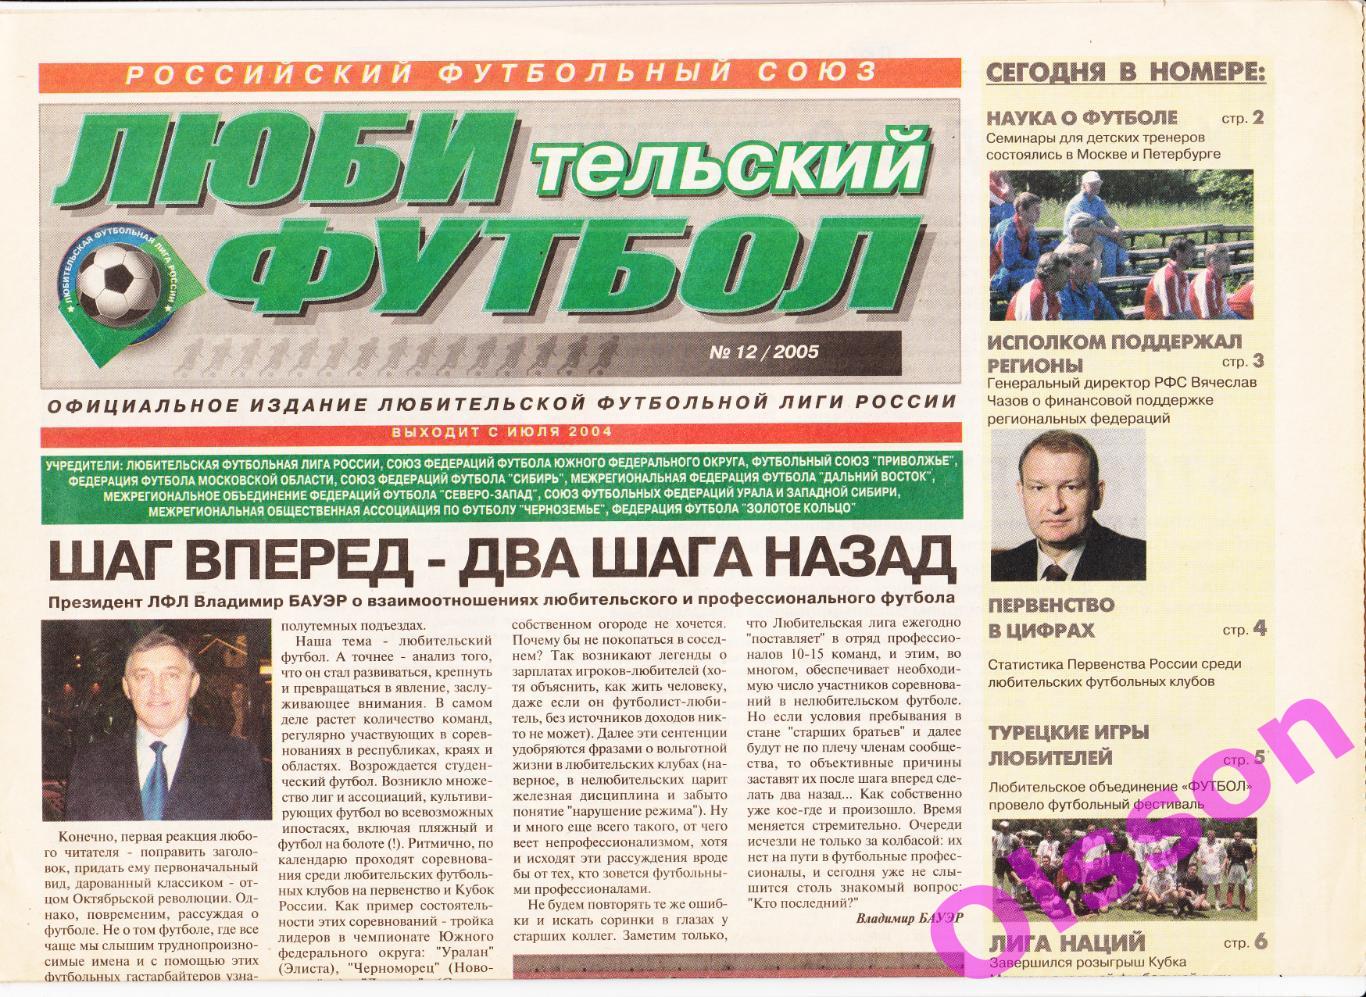 Газета. Любительский футбол. № 12 2005 год